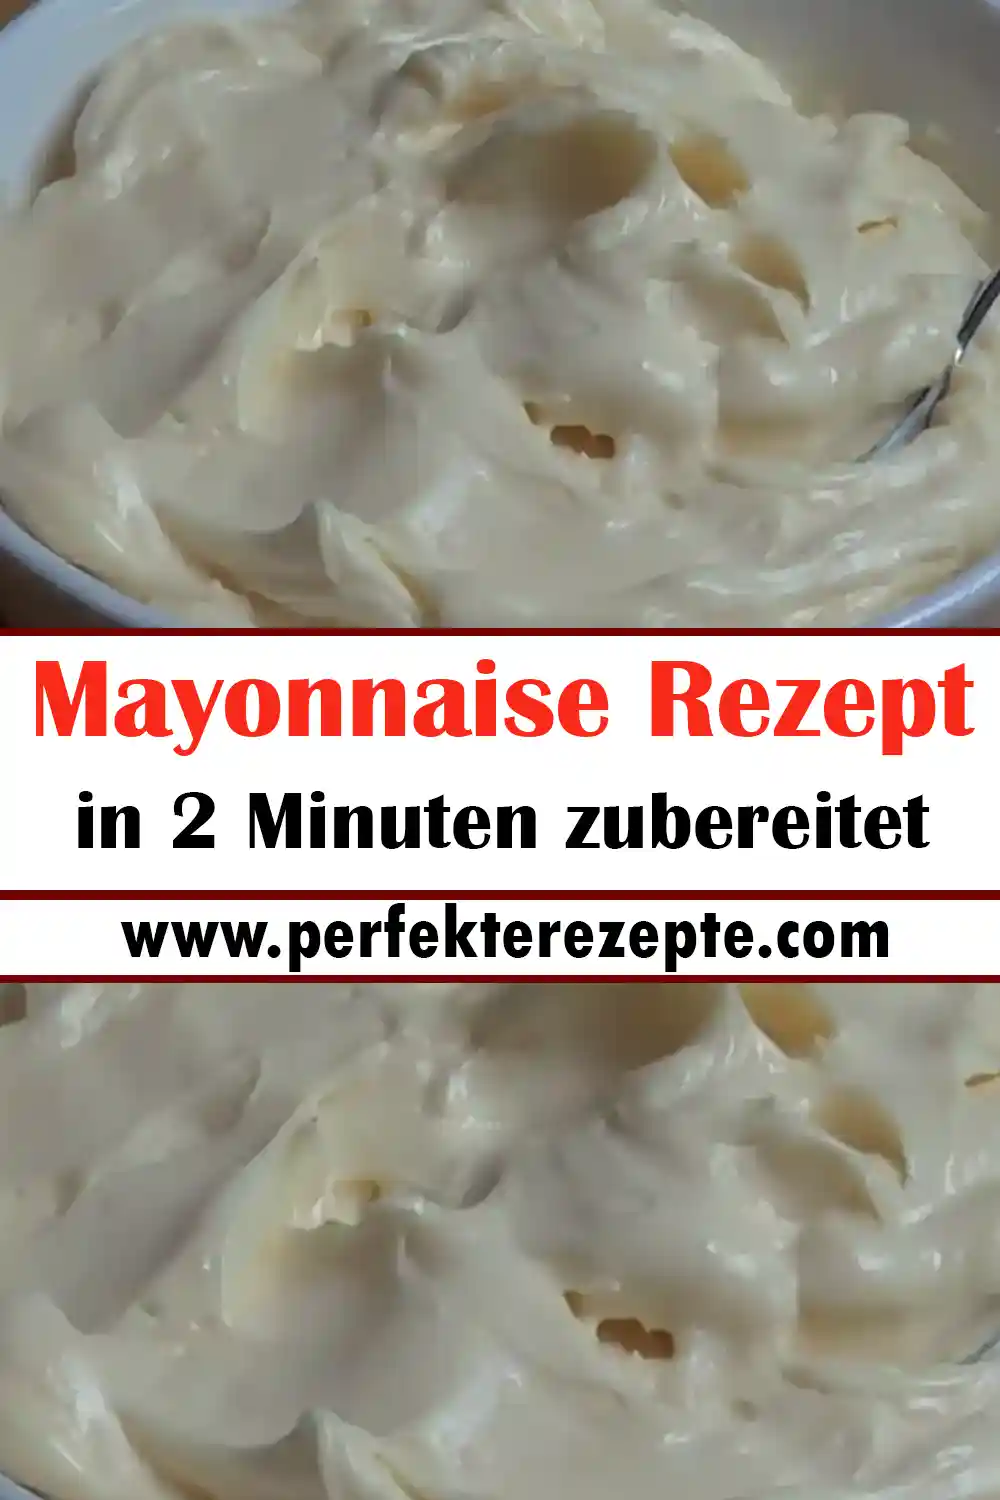 Mayonnaise Rezept in 2 Minuten zubereitet